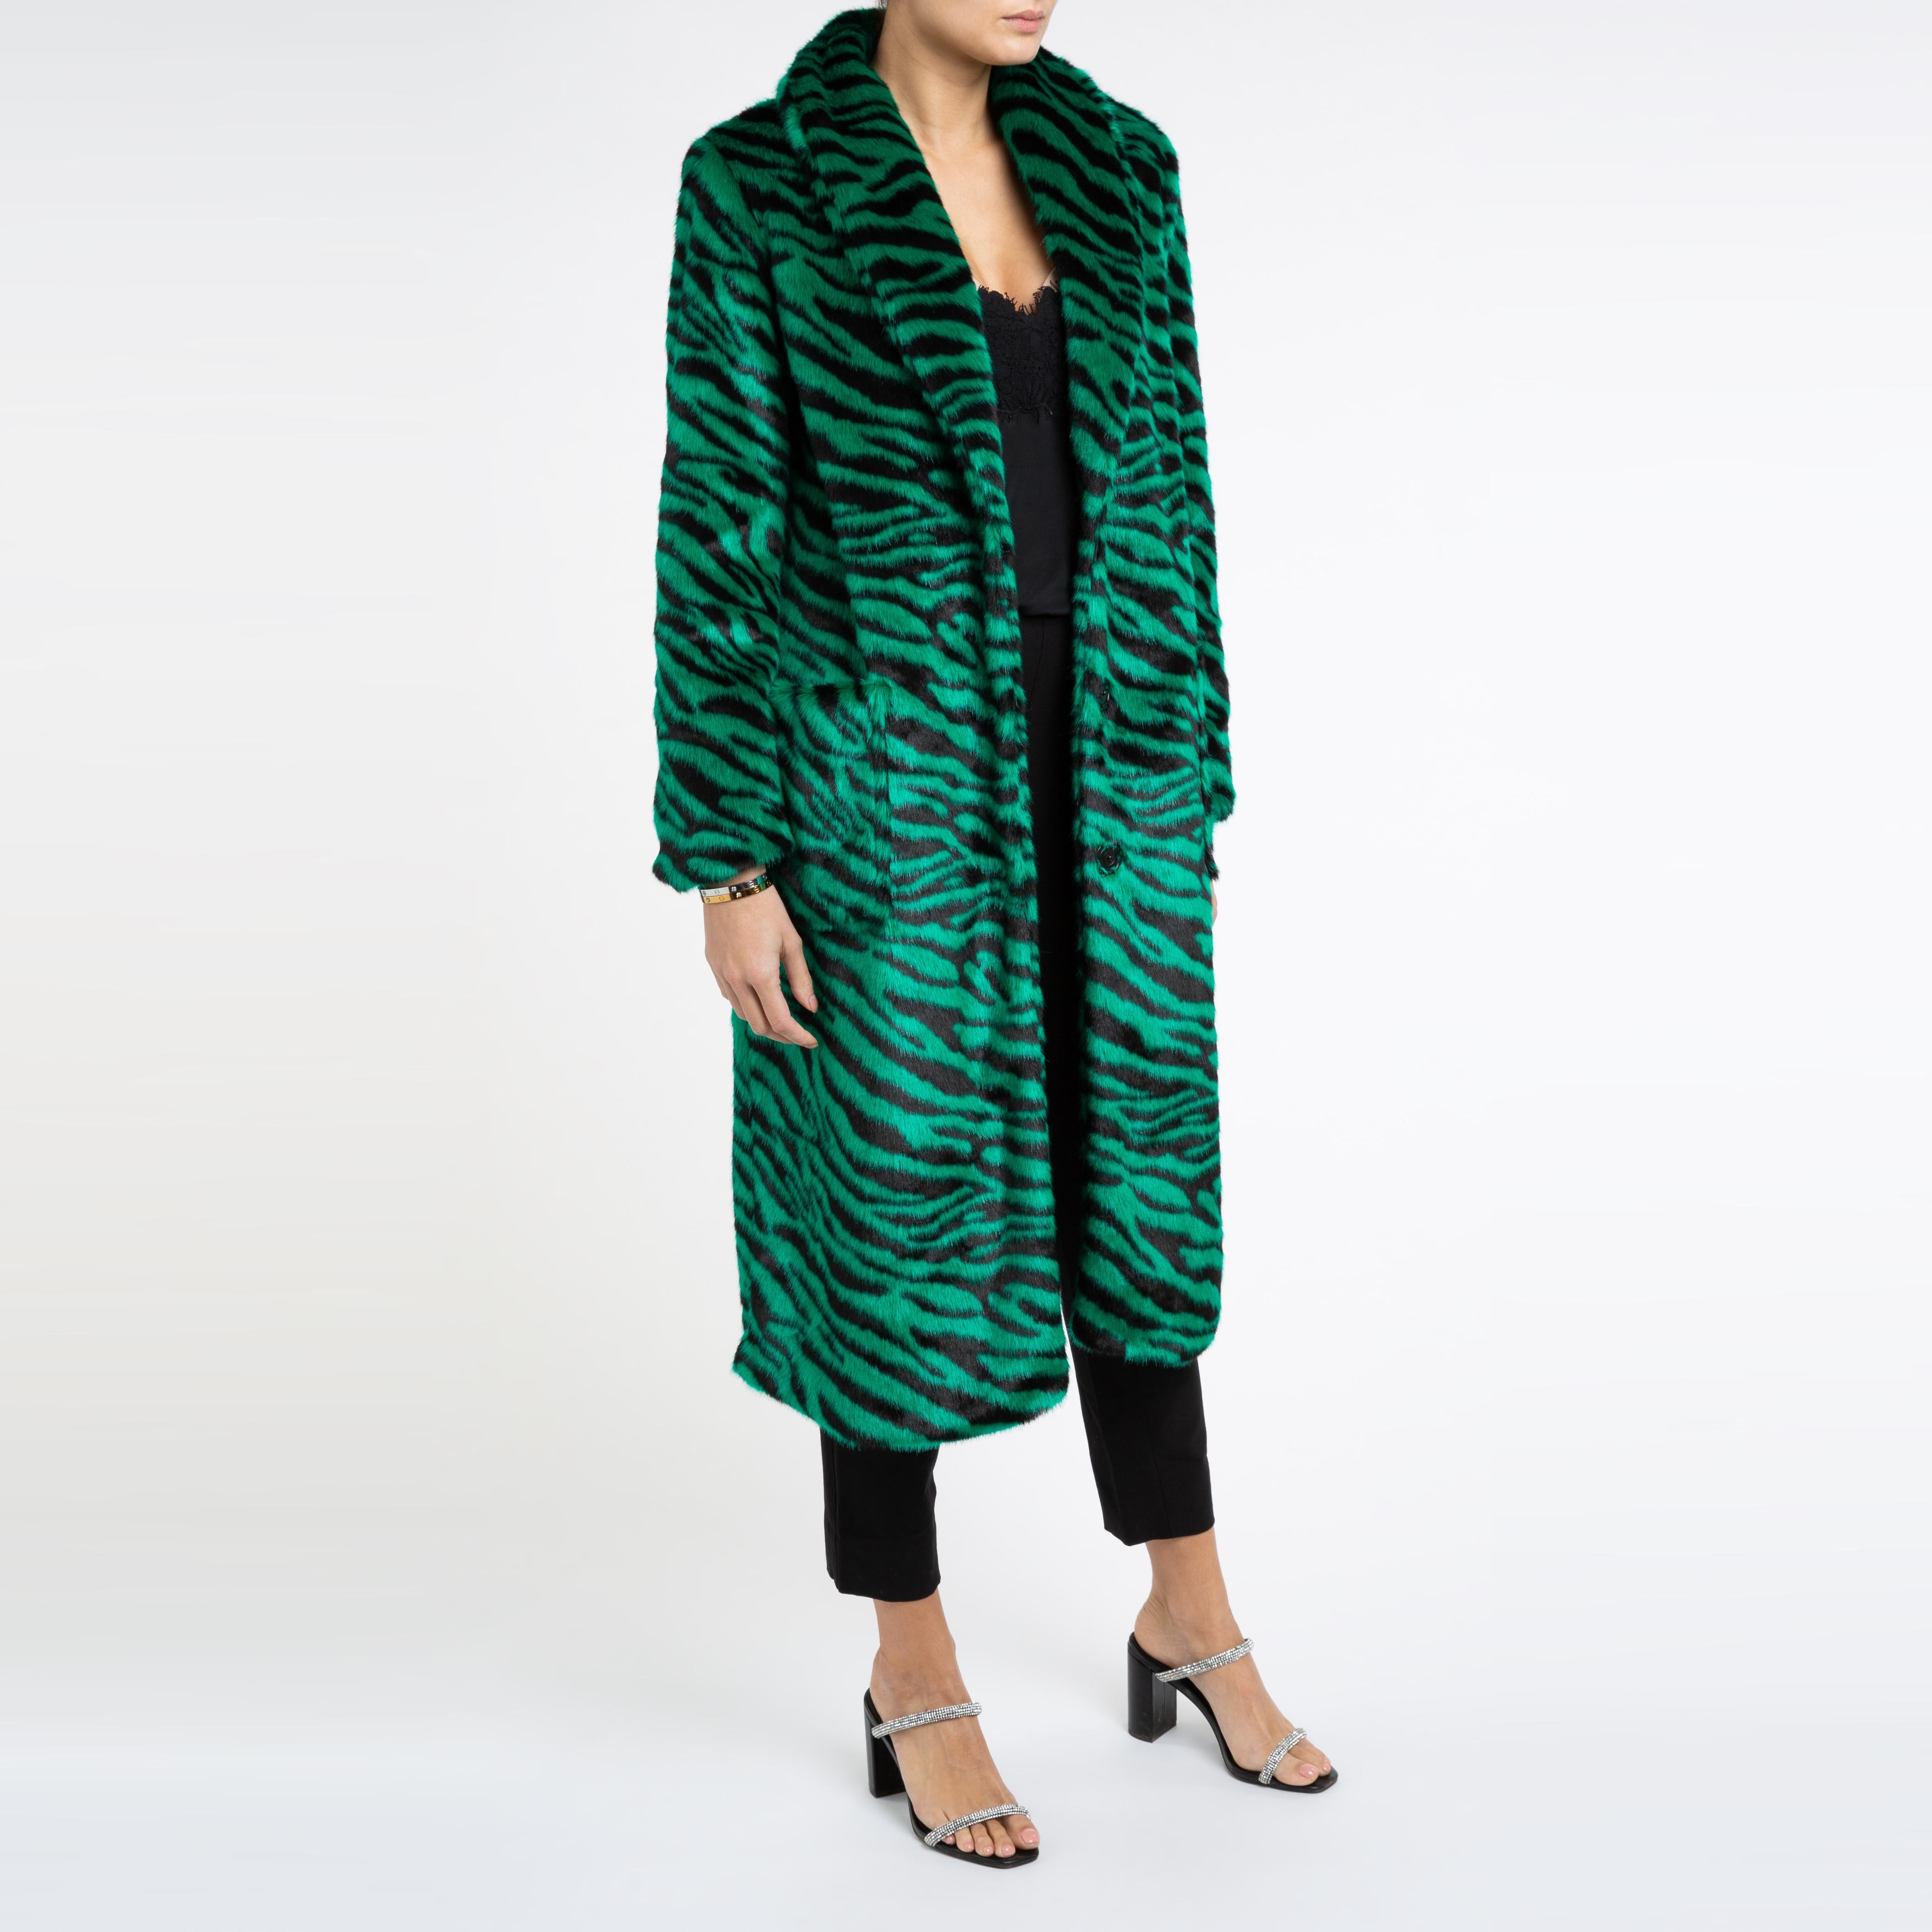 Verheyen London Esmeralda Faux Fur Coat in Emerald Green Zebra Print size uk 12 For Sale 1